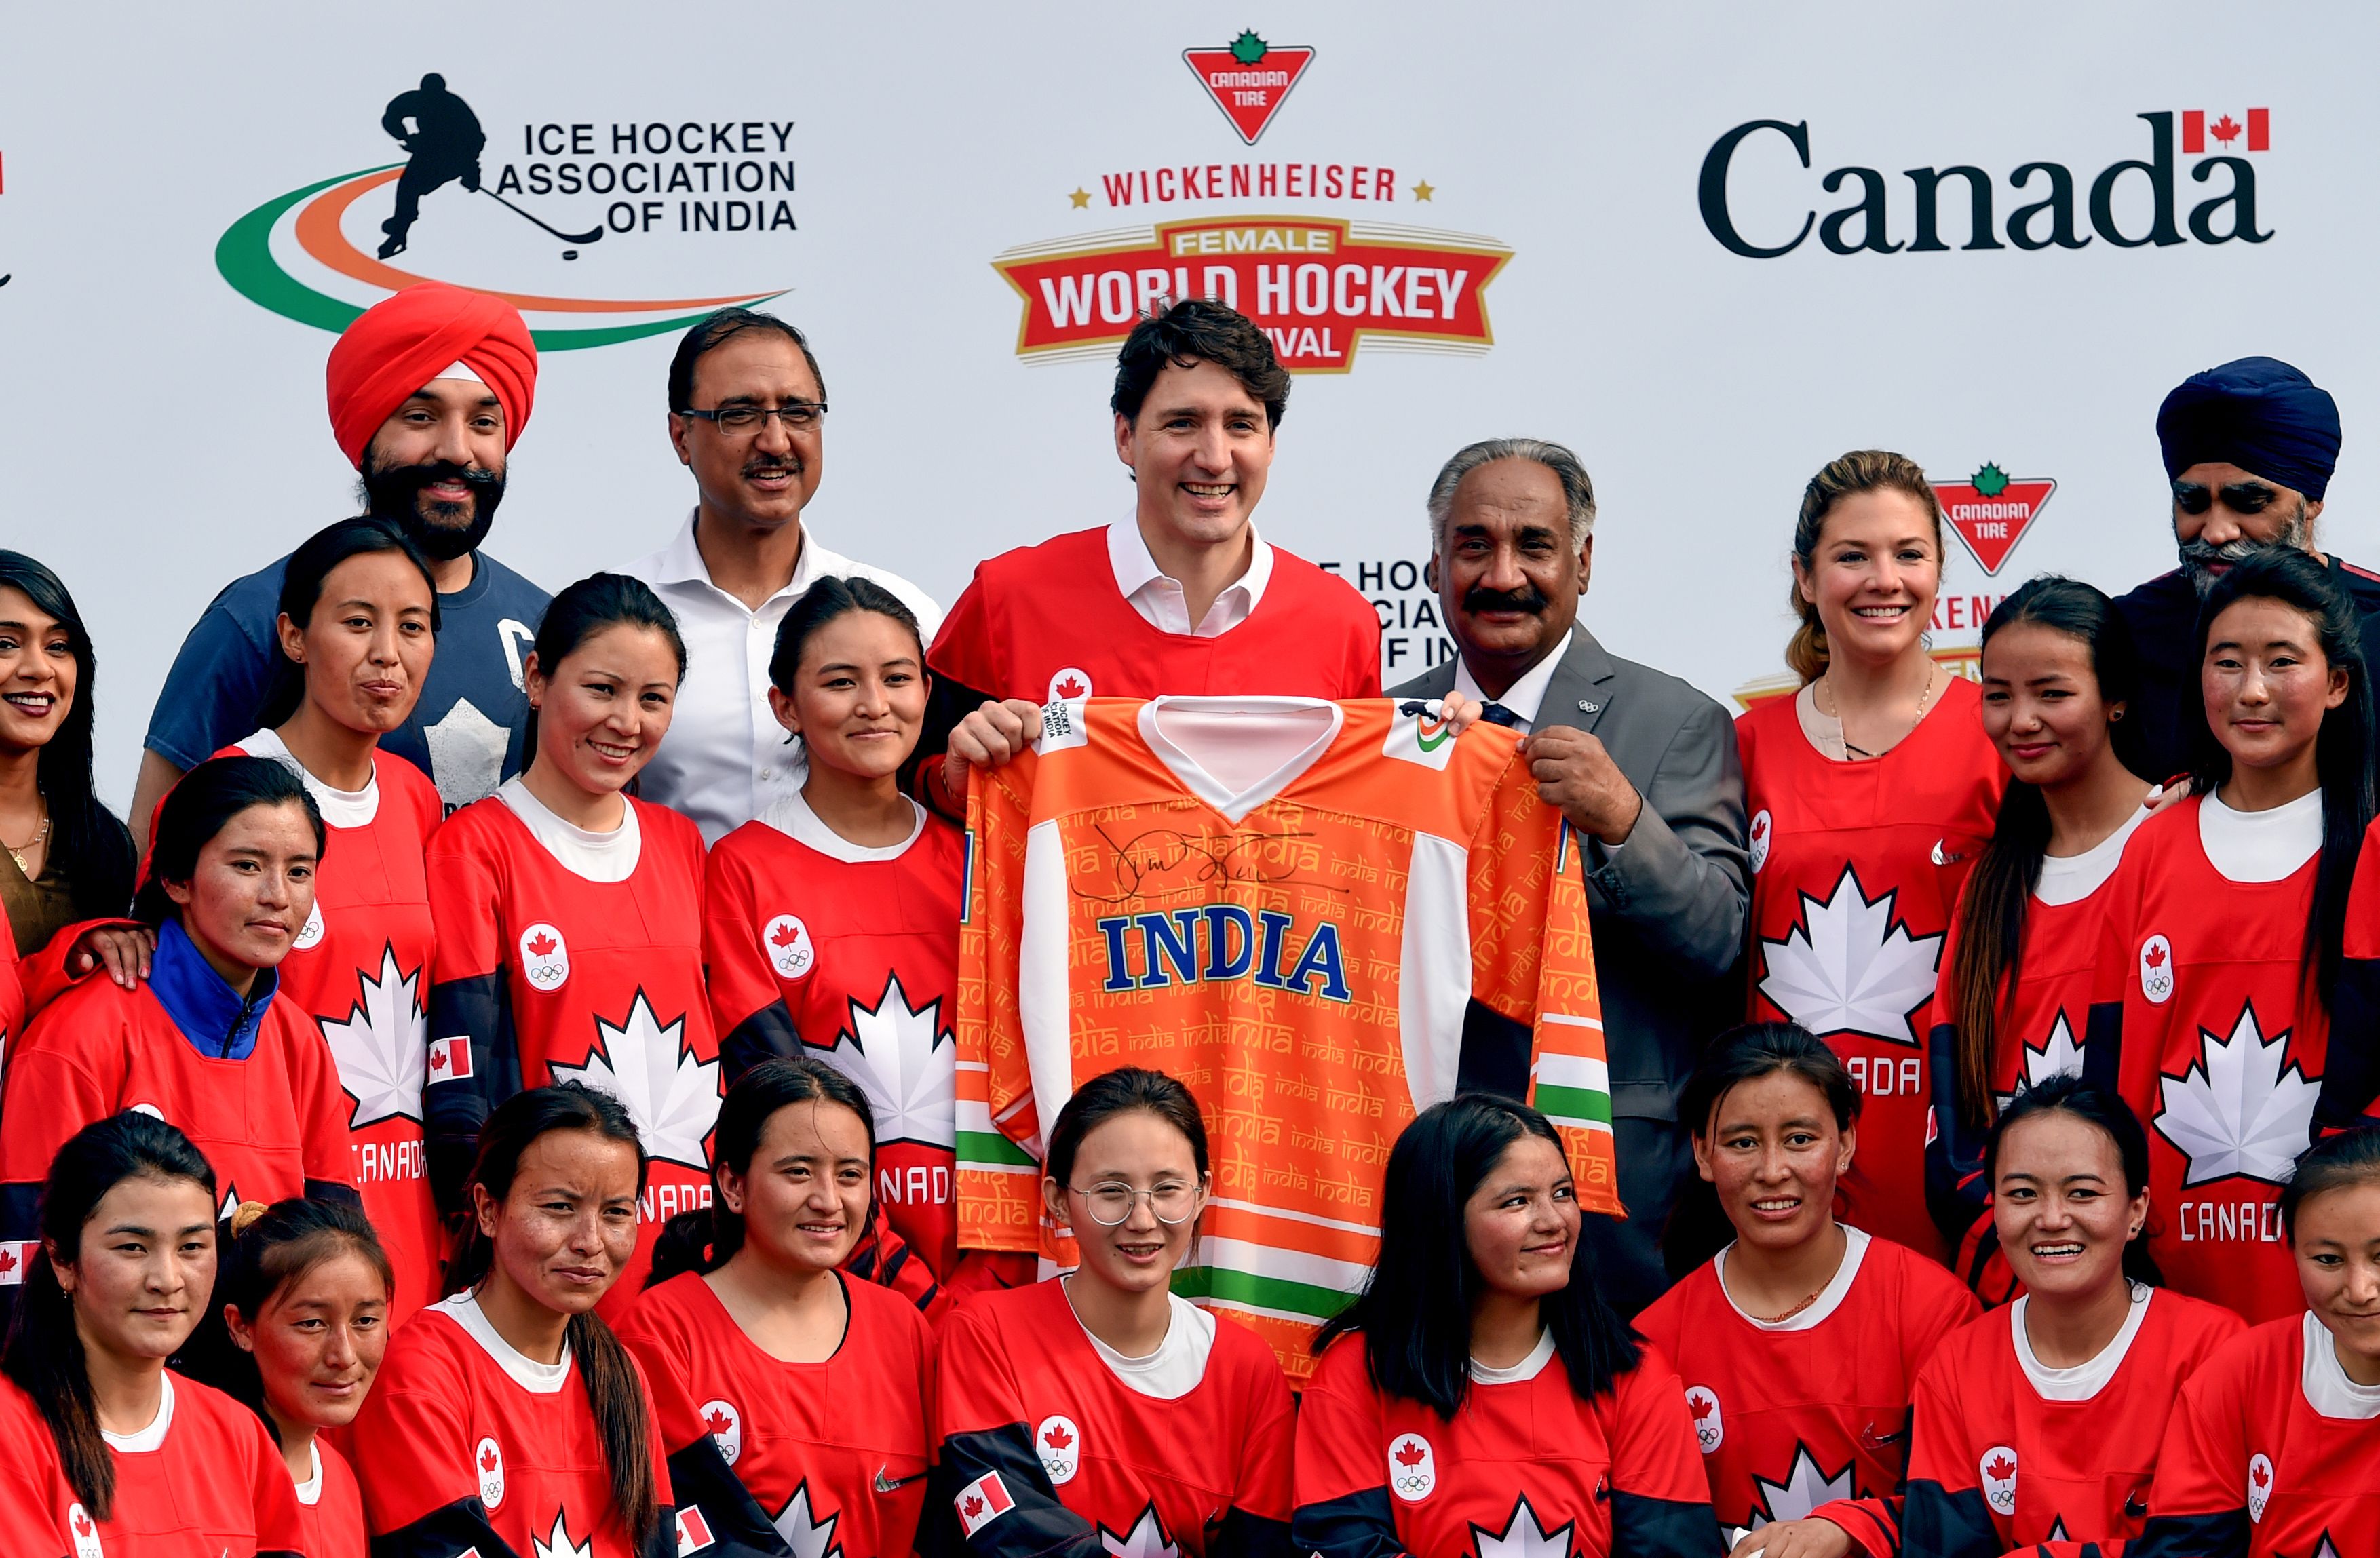 صورة تذكارية لرئيس وزراء كندا مع لاعبات الهوكى بالهند